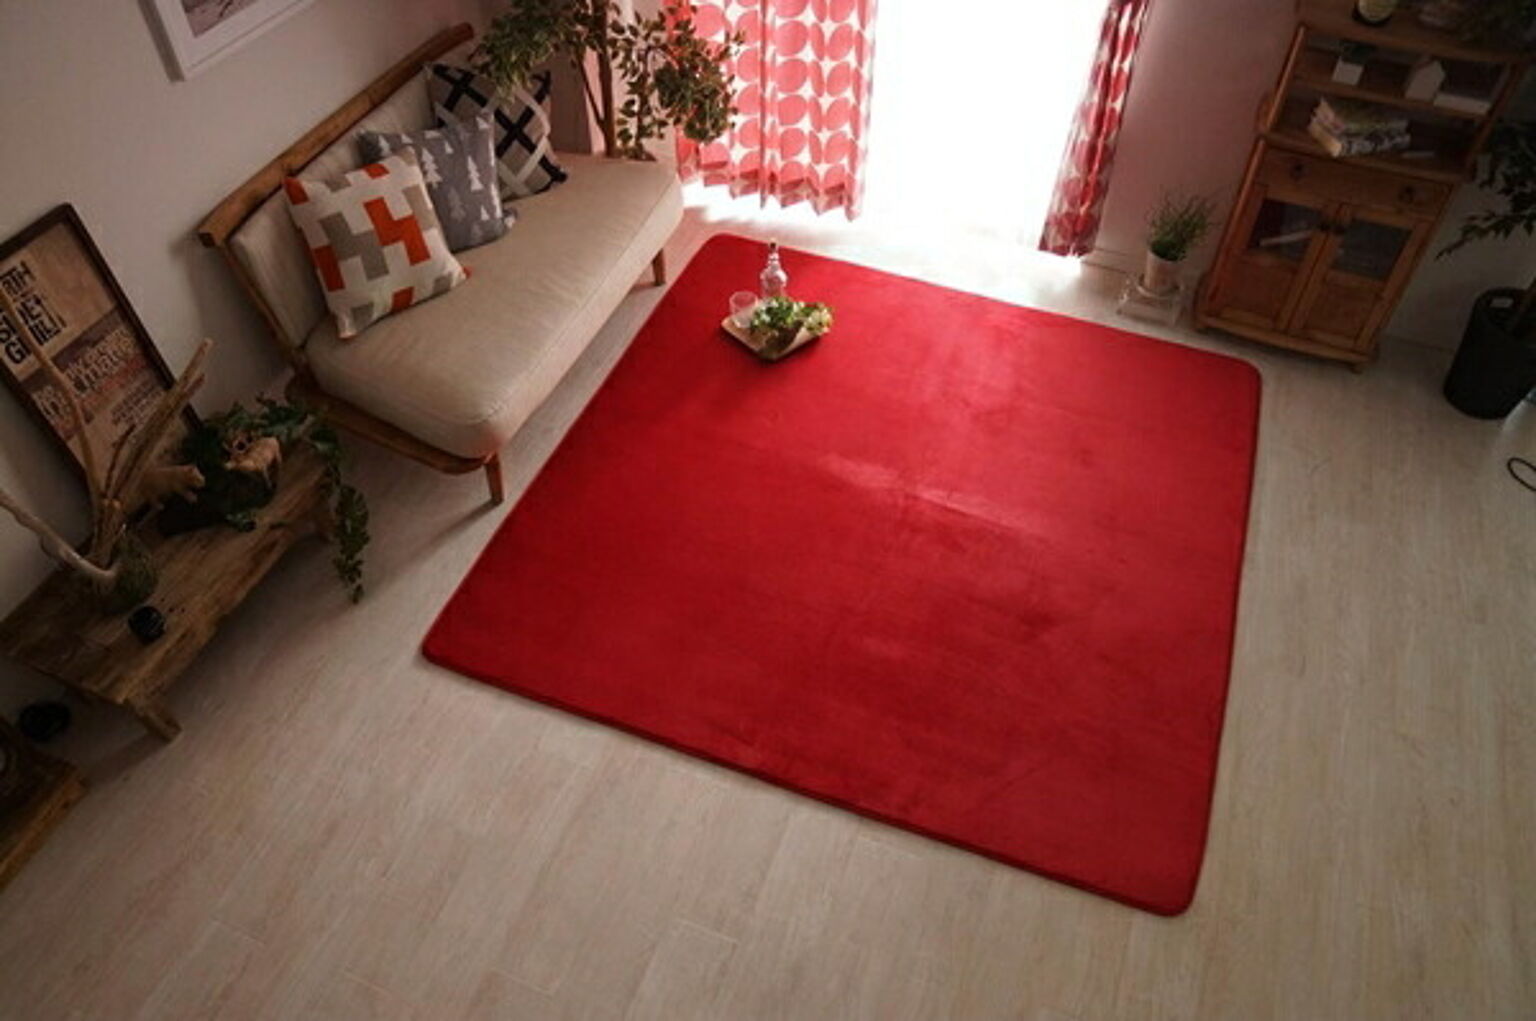 ローズガーデン ラグ マット 絨毯 洗濯できる さらさら無地のフランネルラグ 約190x190cm ノーマルタイプ 正方形 フランネル 無地